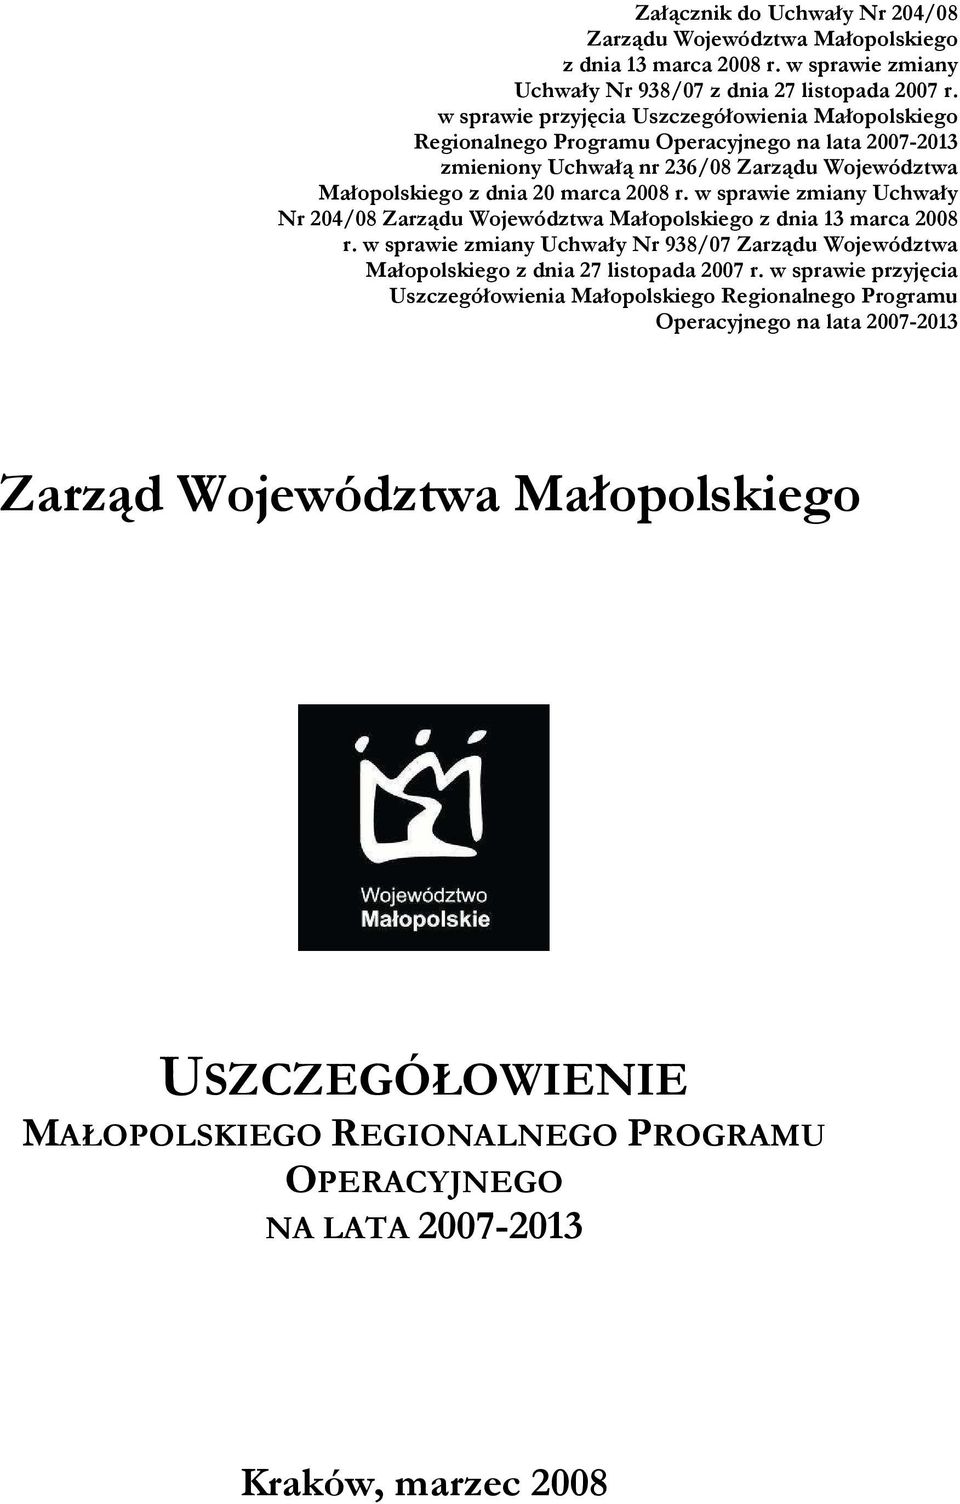 w sprawie zmiany Uchwały Nr 204/08 Zarządu Województwa Małopolskiego z dnia 13 marca 2008 r. w sprawie zmiany Uchwały Nr 938/07 Zarządu Województwa Małopolskiego z dnia 27 listopada 2007 r.